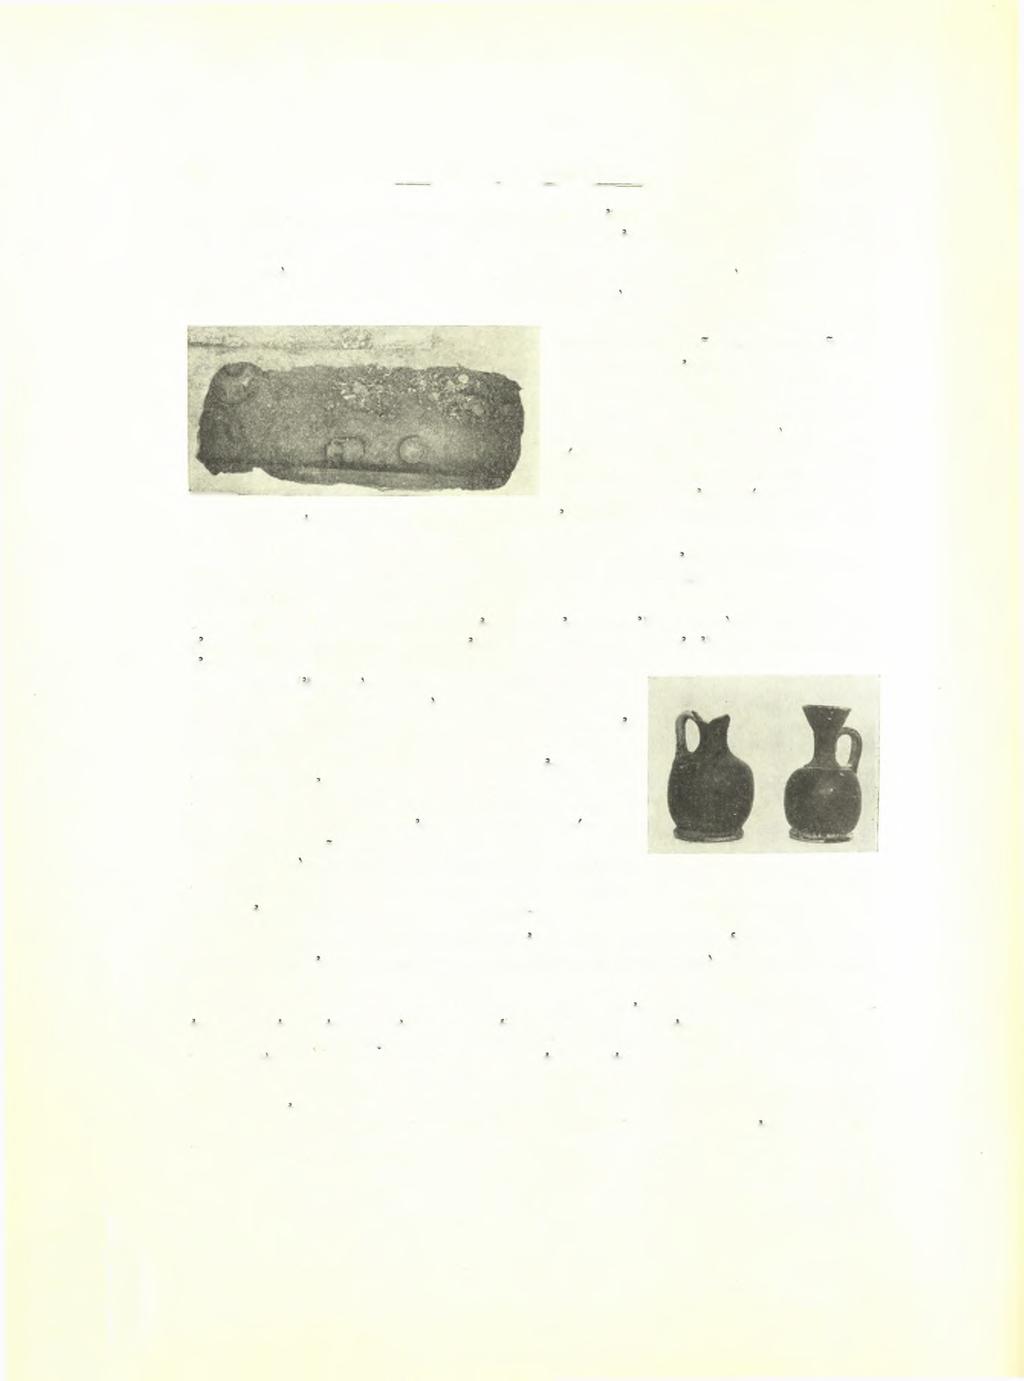 84 Σεραφείμ Ί. Χαριτωνίδου ΑΕ 1958 6 (πίν. Ι8γ δεξ.). Ληκύθων συγκολληθέν μέ μικράς ελλείψεις κατά τό σώμα.